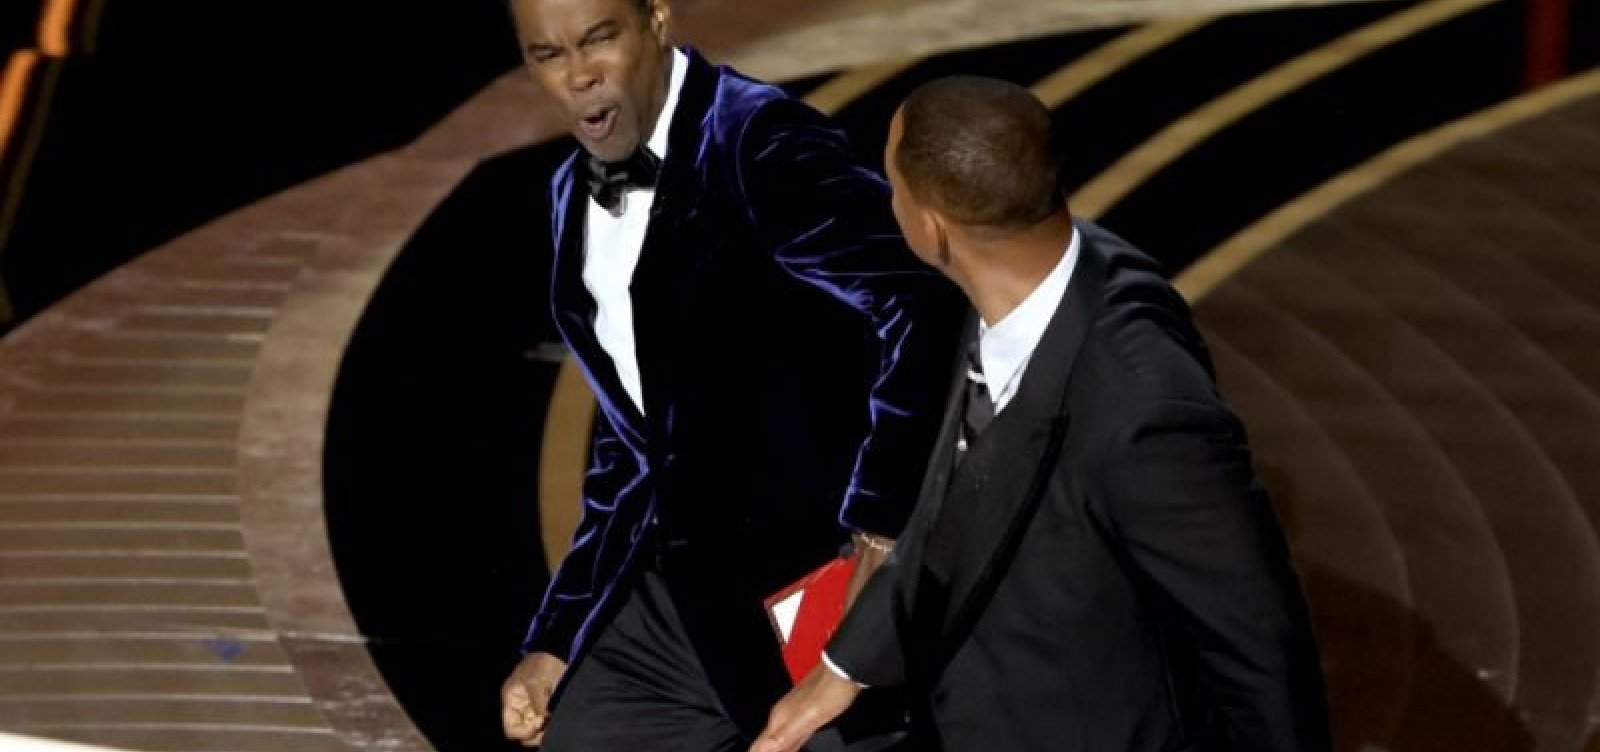 Will Smith pode perder Oscar por agressão a Chris Rock, diz jornal